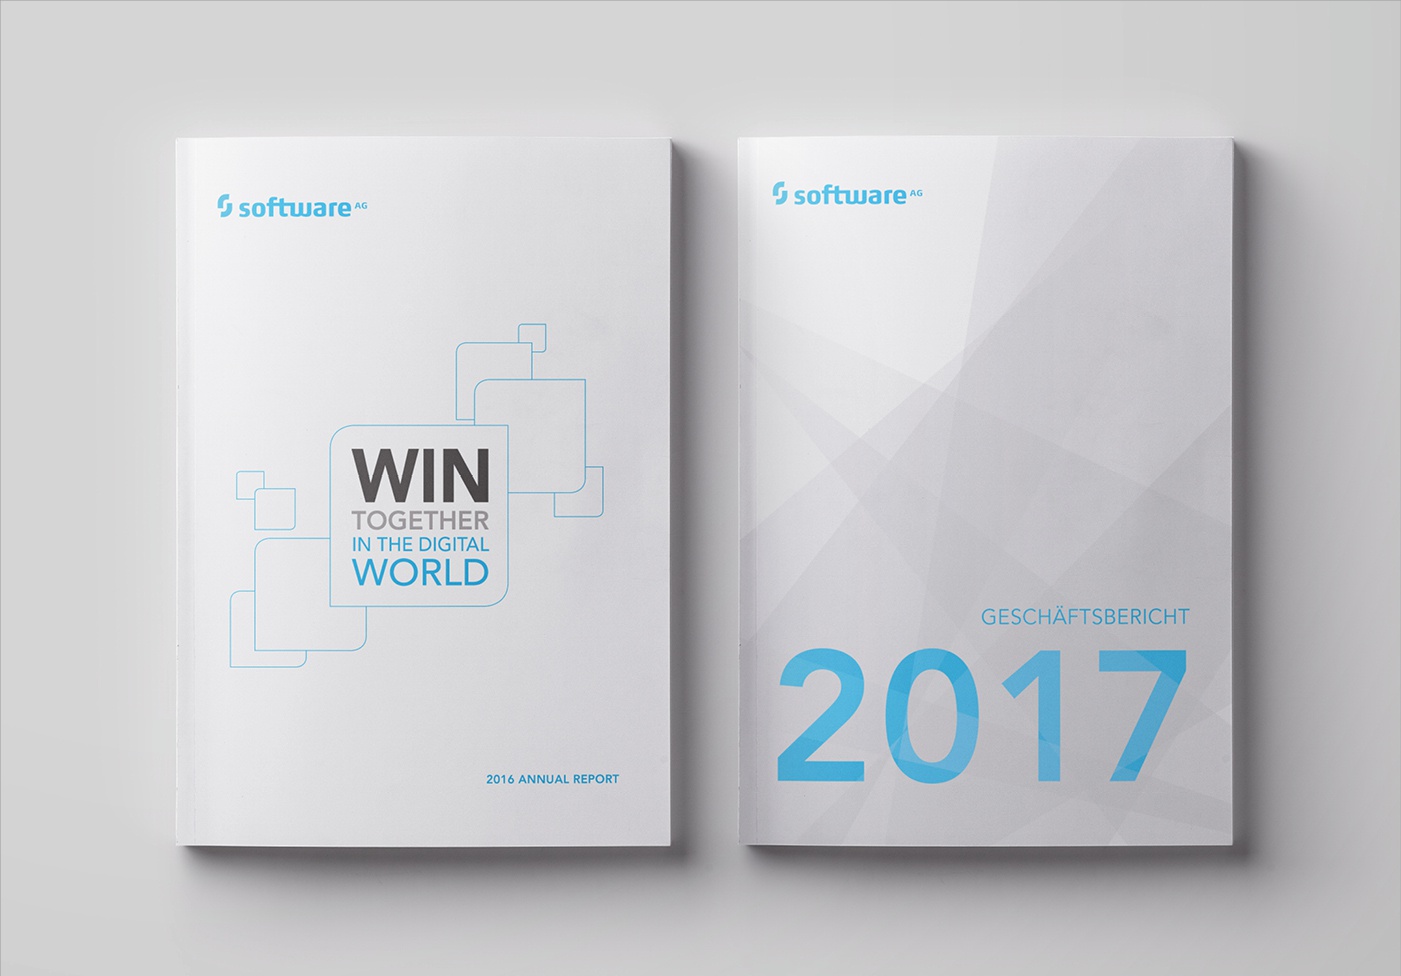 Software AG: Imagebroschüre in Deutsch und Englisch, Konzeption: Covergestaltung, Layout, Umsetzung, Infografiken, Bildbearbeitung, Reinzeichnung und Druckausgabe